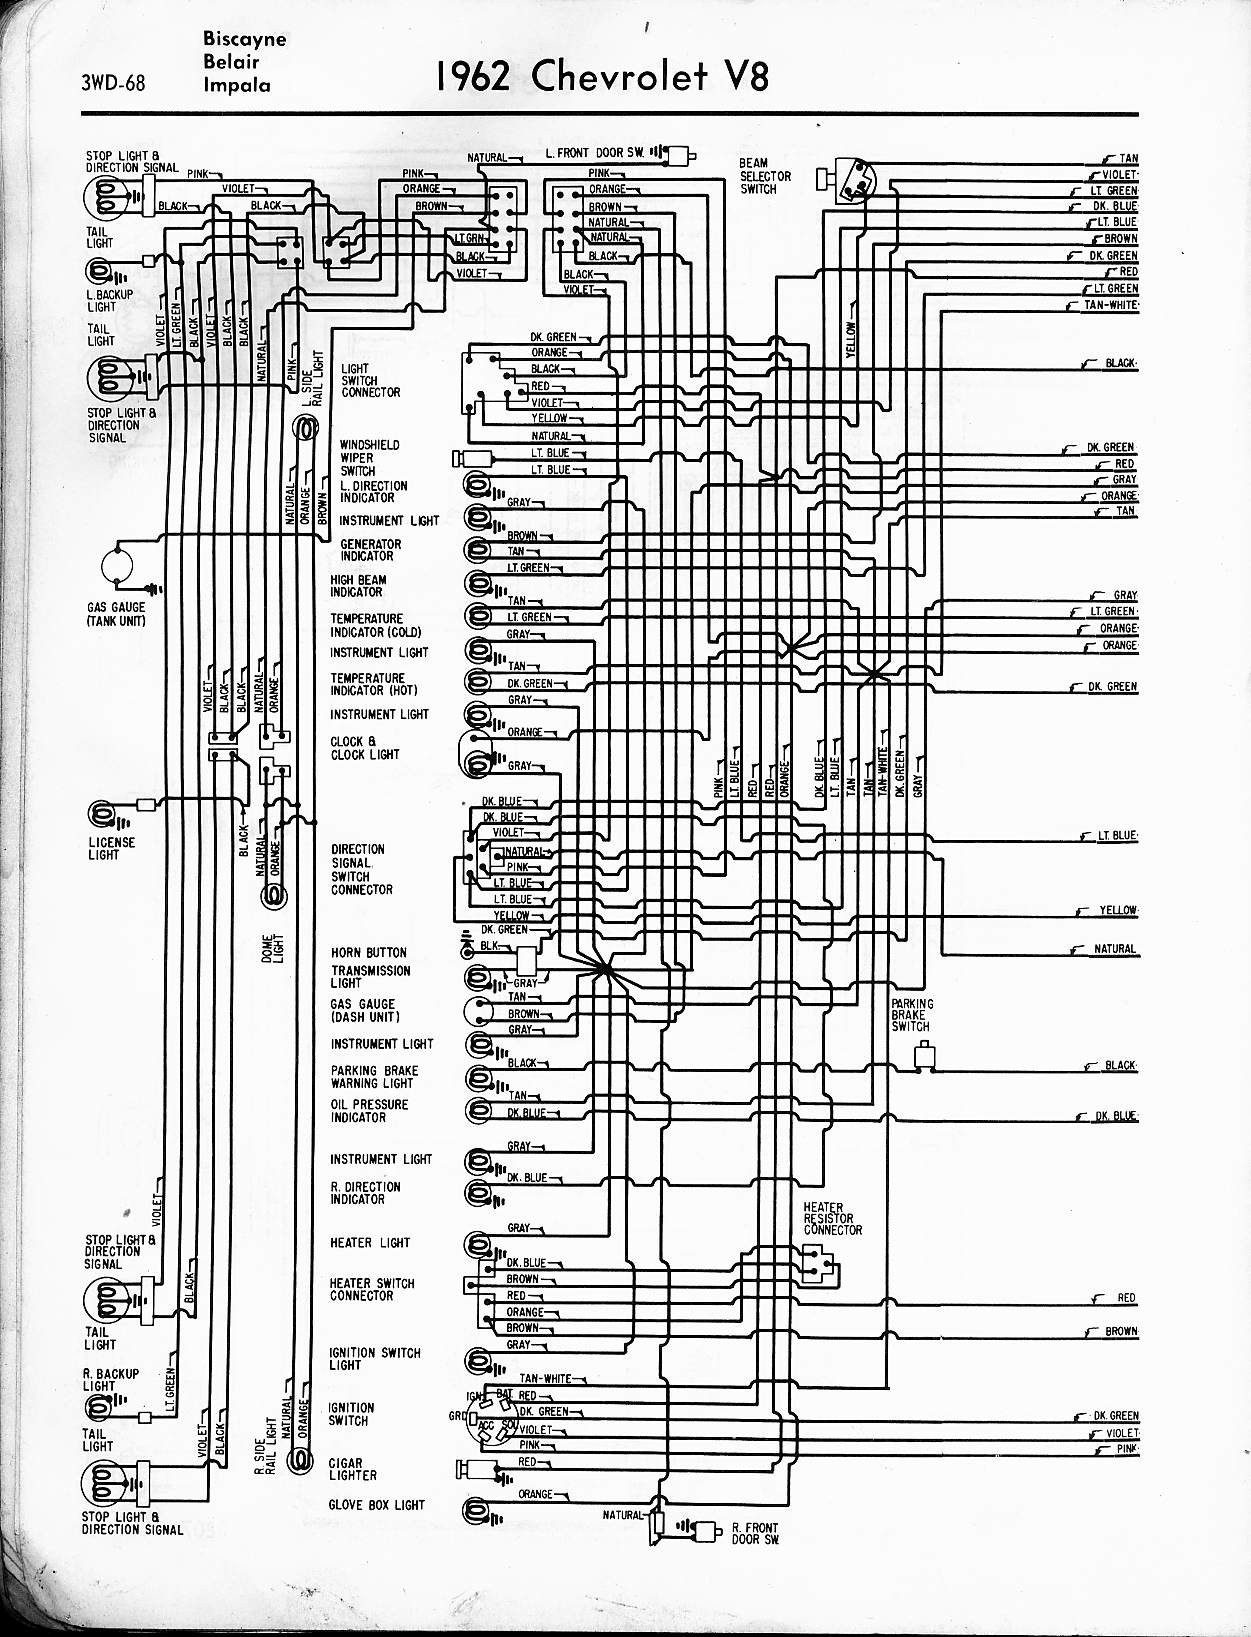 2003 Chevy Impala Heater Wire Schematic Wiring Diagram G8